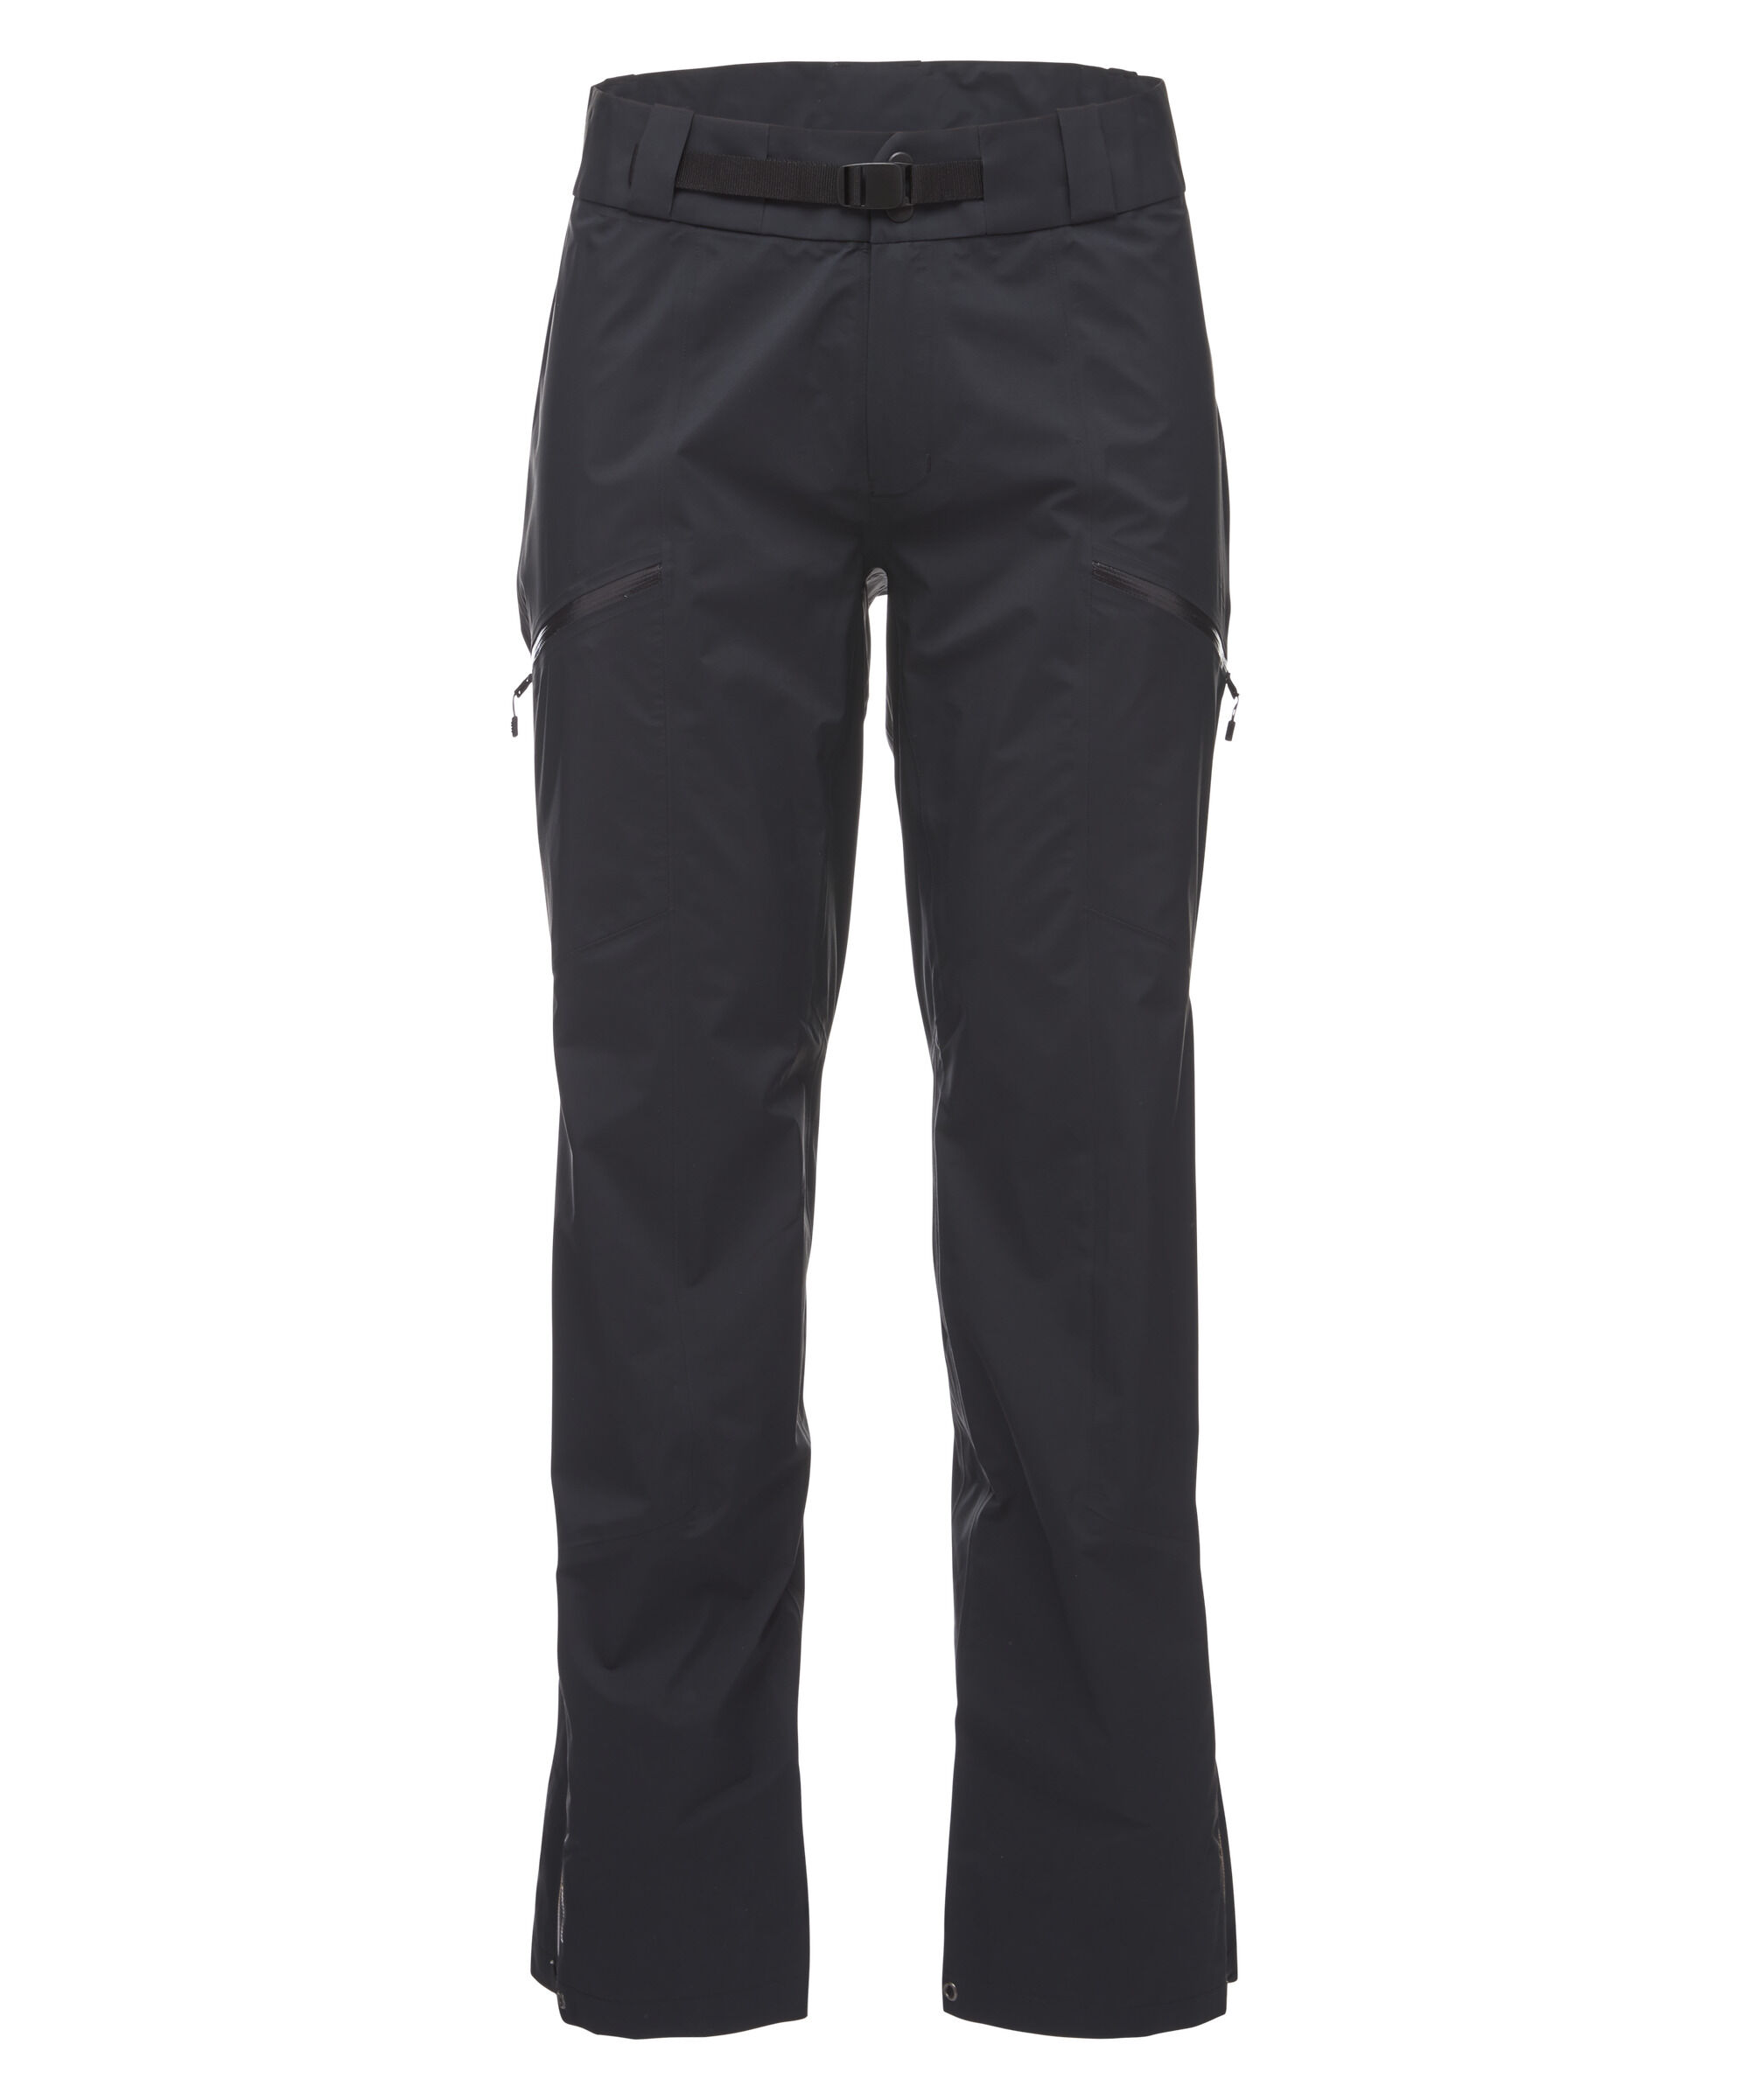 Black Diamond - Helio Active Pants - Pantalón de esquí - Hombre